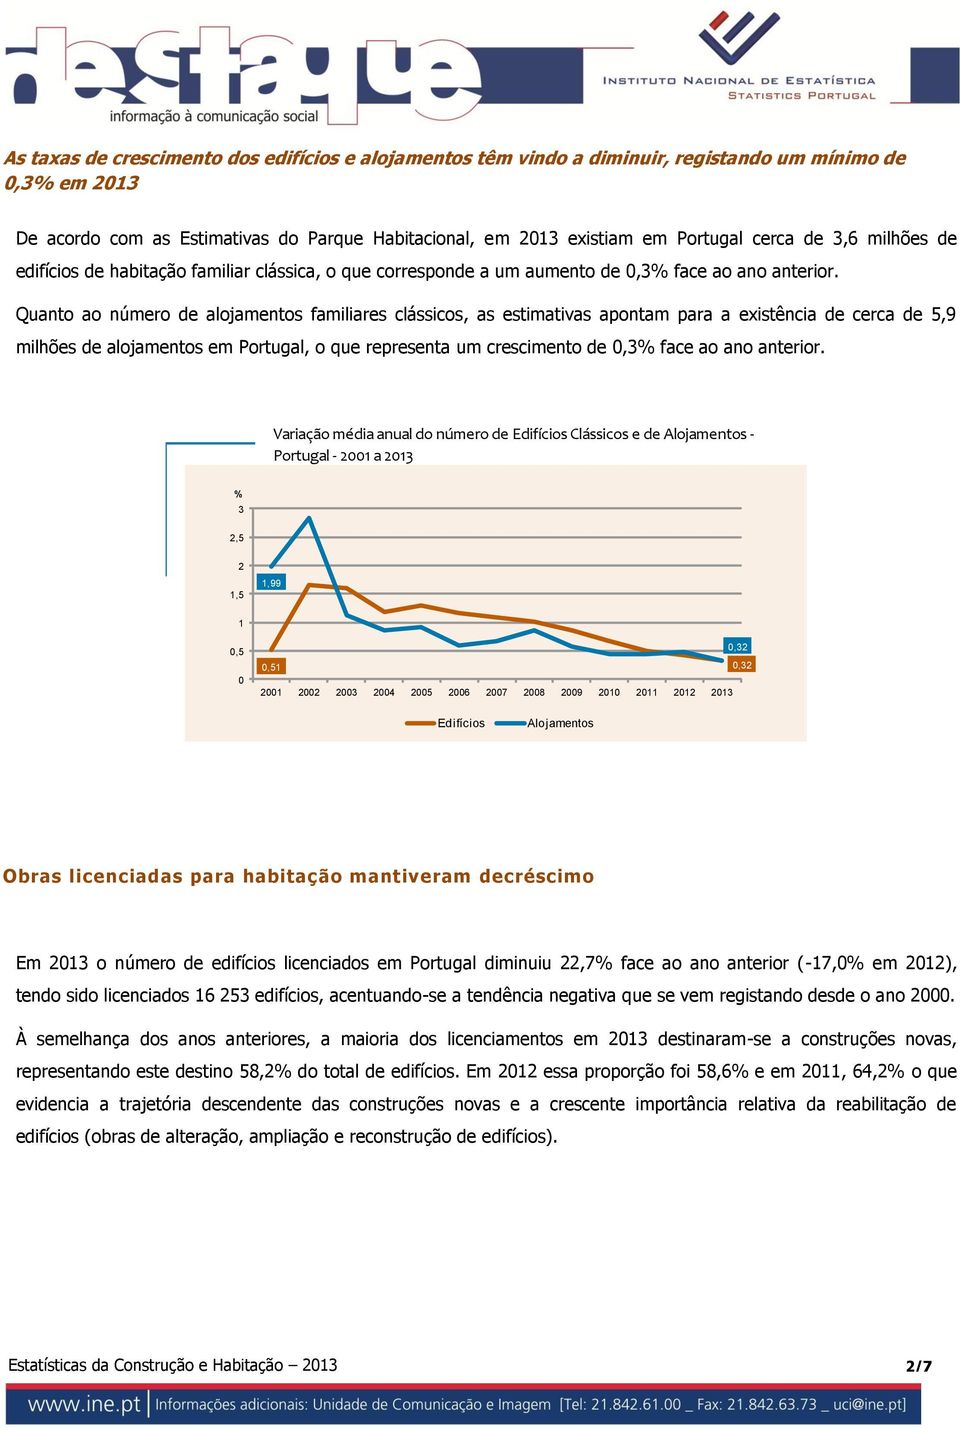 Quanto ao número de alojamentos familiares clássicos, as estimativas apontam para a existência de cerca de 5,9 milhões de alojamentos em Portugal, o que representa um crescimento de,3 face ao ano